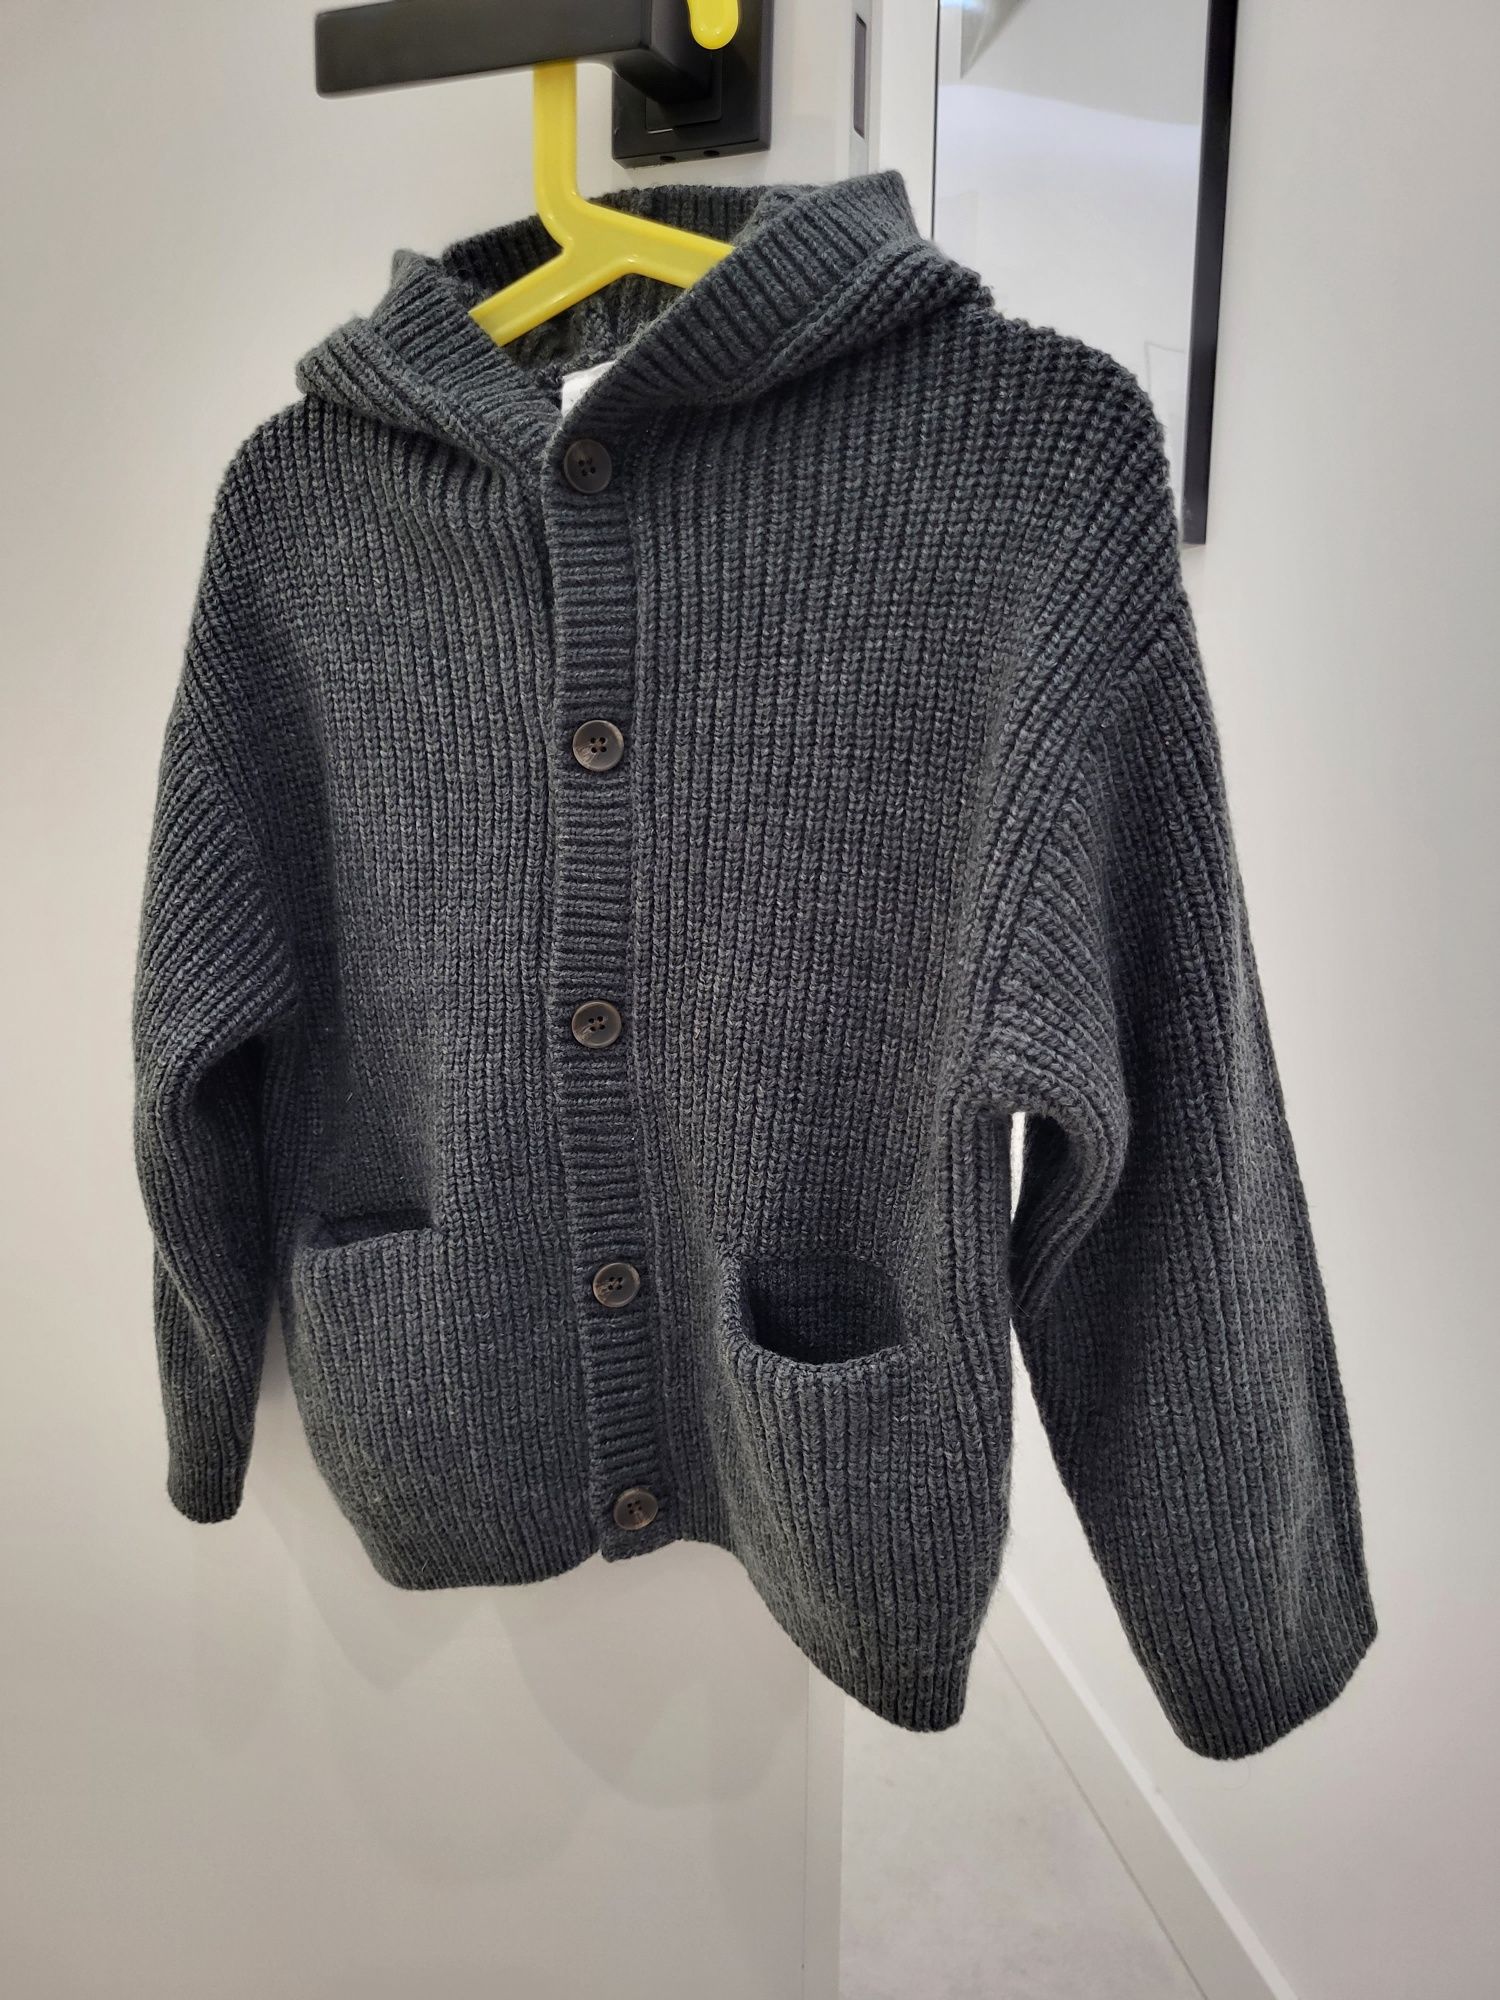 Sweter Zara 104 szary popielaty z kapturem bluza swetr kardigan guziki